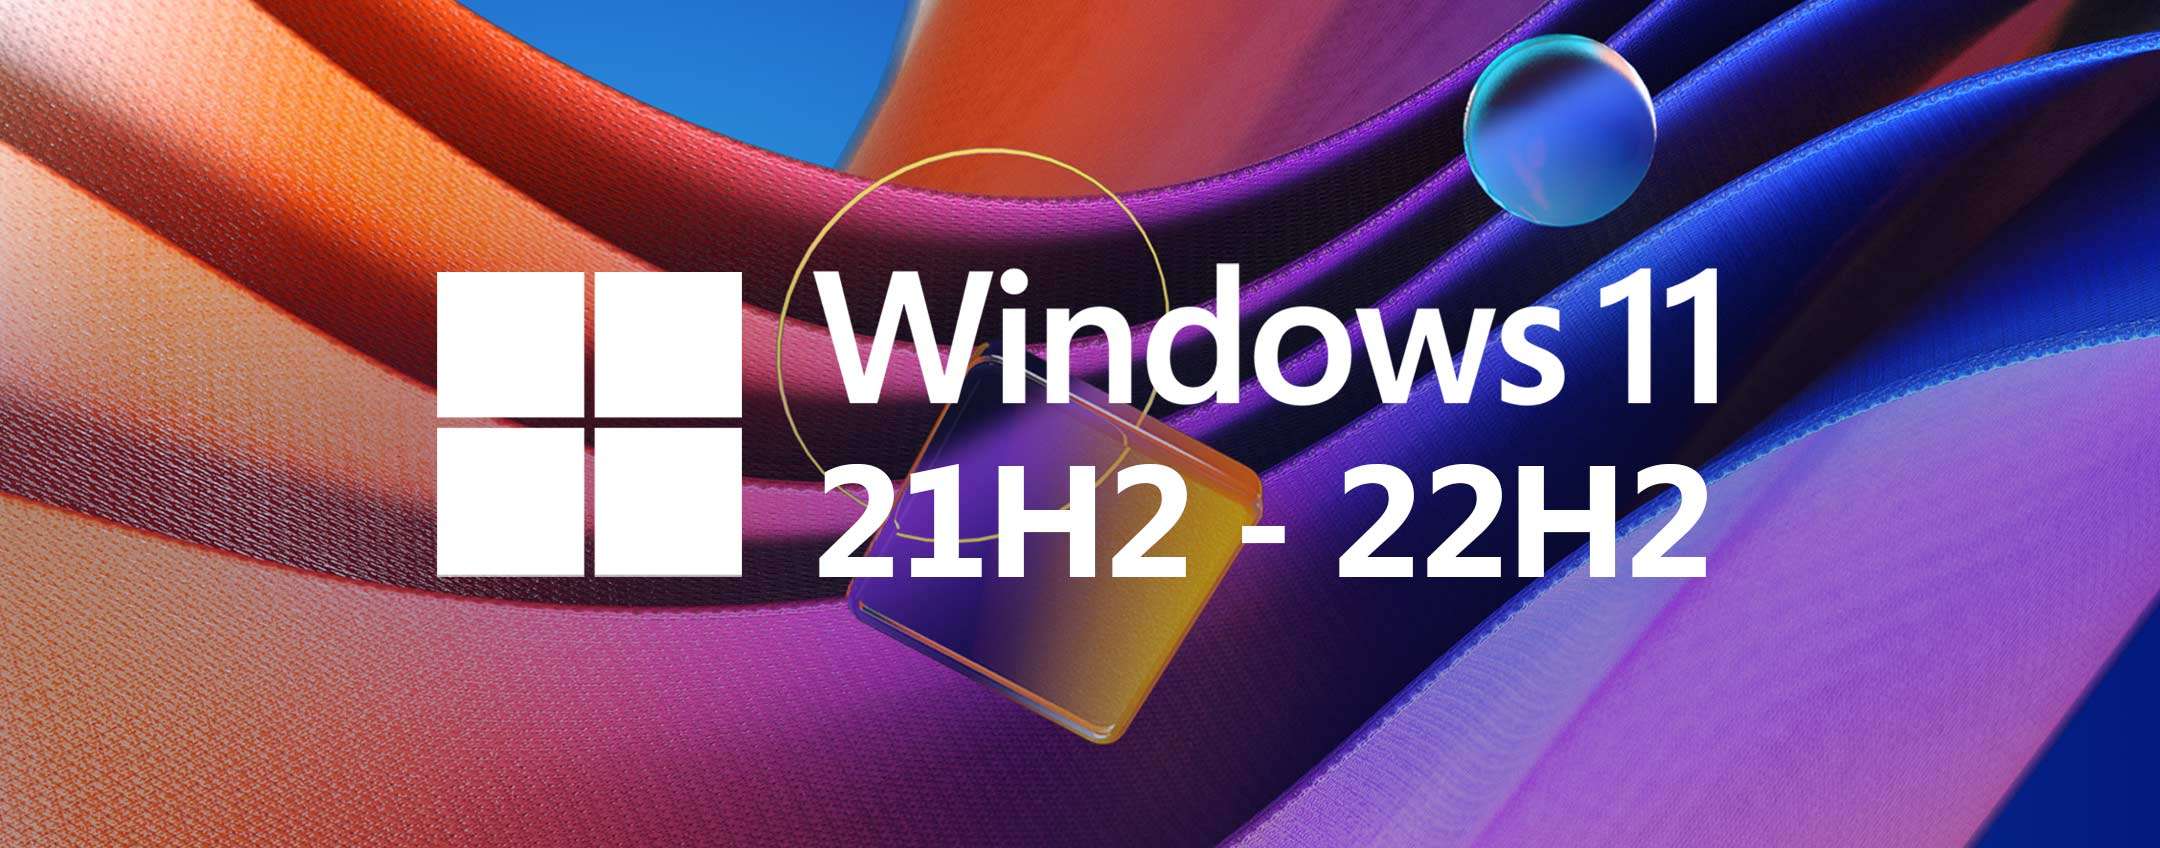 Windows 11 21H2, 22H2